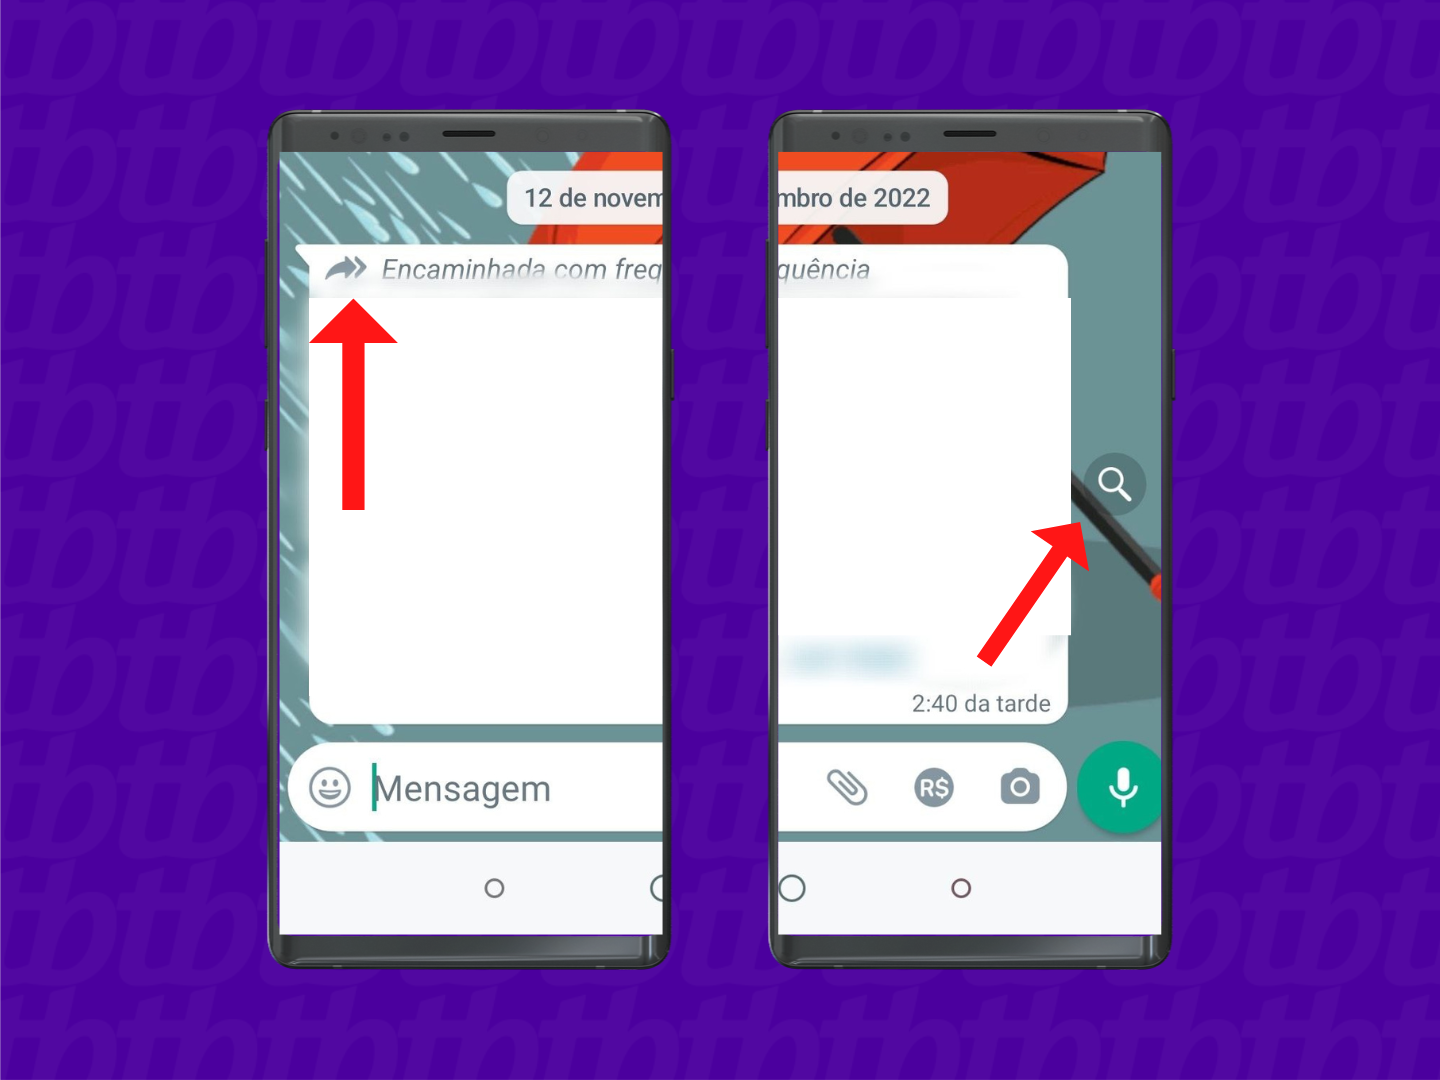 Imagem celular com recurso de pesquisa no whatsapp - como checar notícias falsas no whatsapp